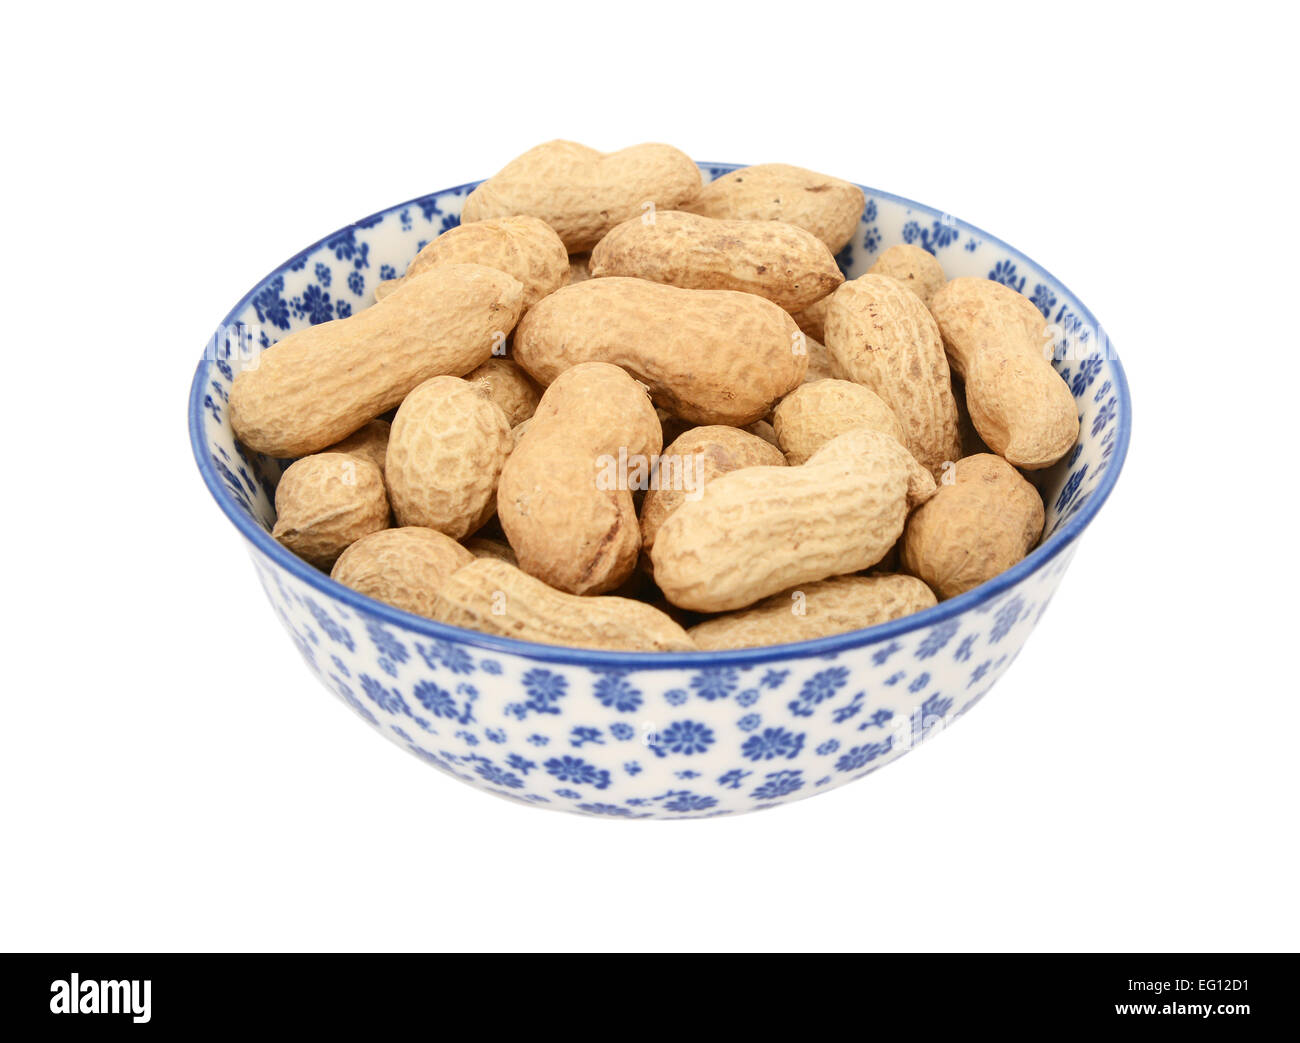 Monkey Nuts in einer blau-weißen Porzellanschüssel mit floralem Design, isoliert auf weißem Hintergrund Stockfoto